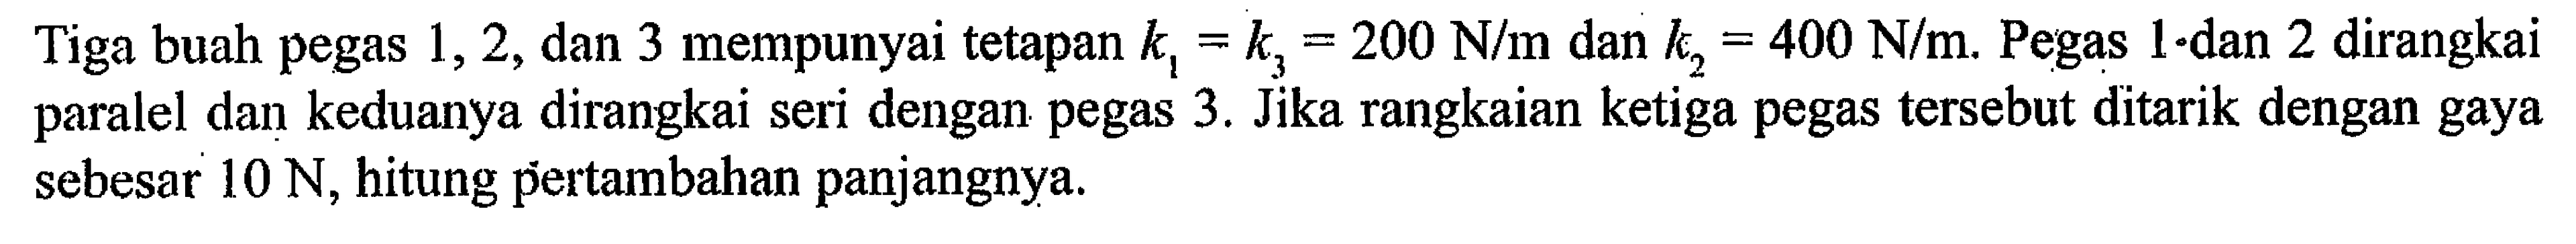 Tiga buah pegas 1, 2, dan 3 mempunyai tetapan k1 = k3, 200 N/m dan k2= 400 N/m. Pegas 1 dan 2 dirangkai paralel dan keduanya dirangkai seri dengan pegas 3. Jika rangkaian ketiga pegas tersebut ditarik dengan gaya sebesar 10 N, hitung pertambahan panjangnya.